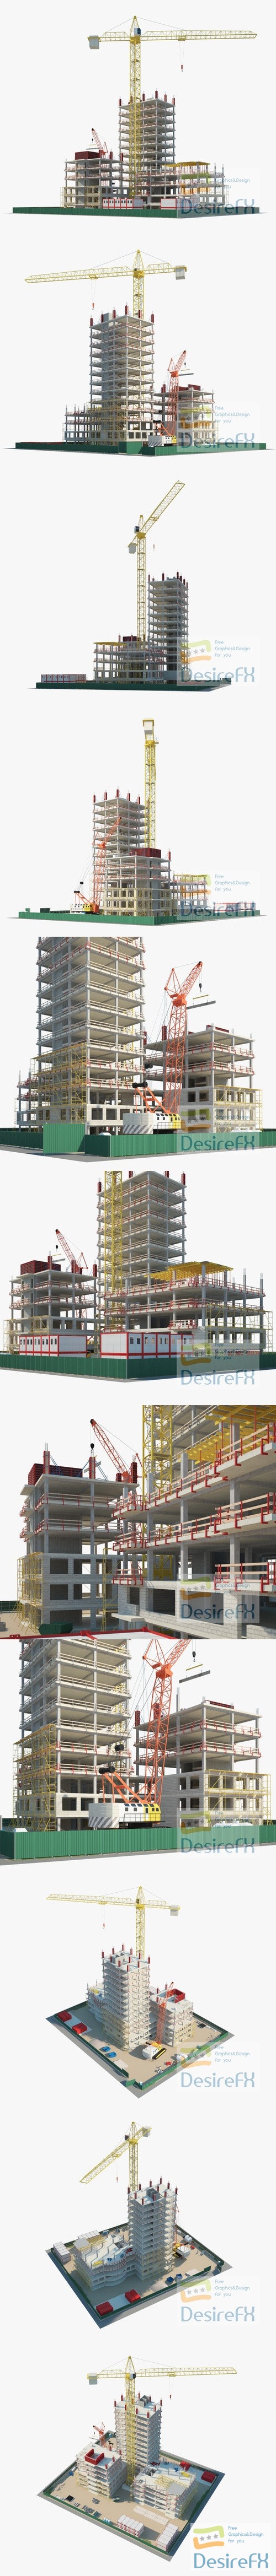 Building Construction site 3D Model